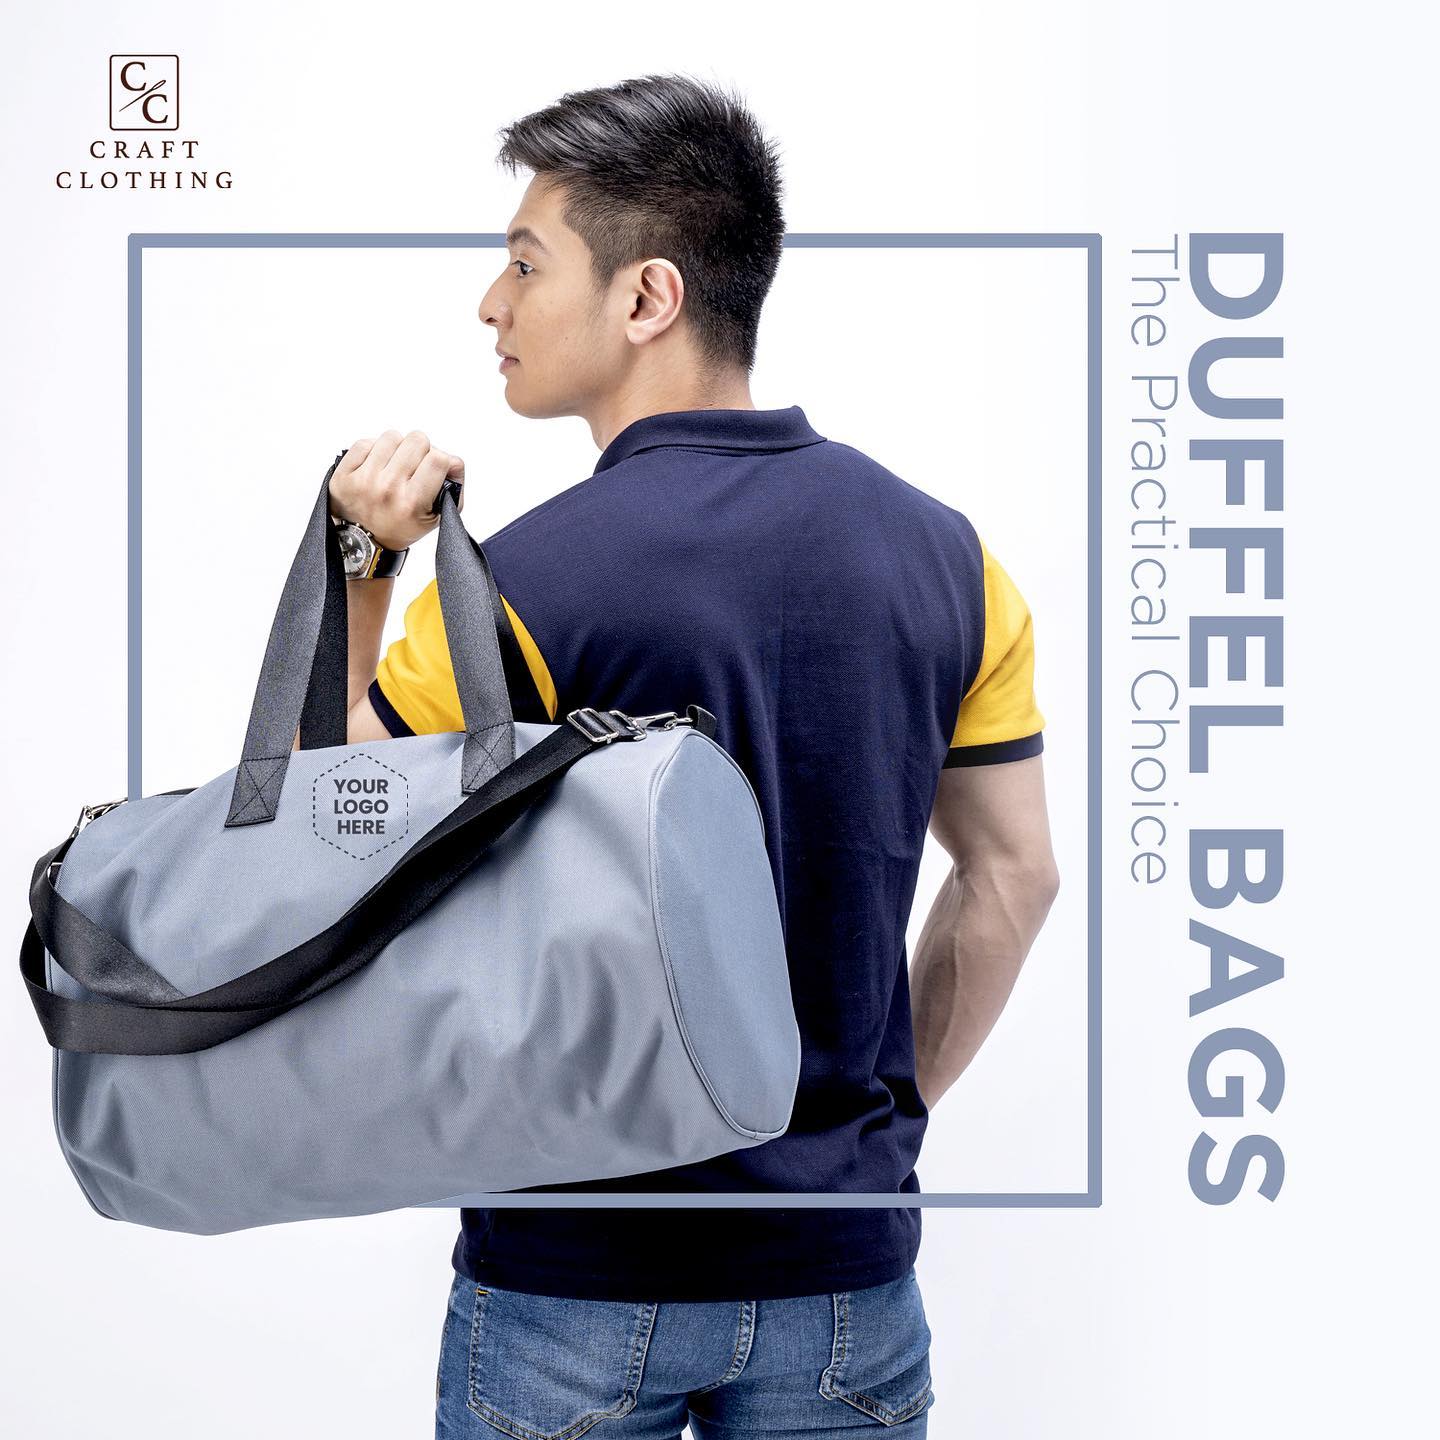 Duffel Bags - The Practical Choice